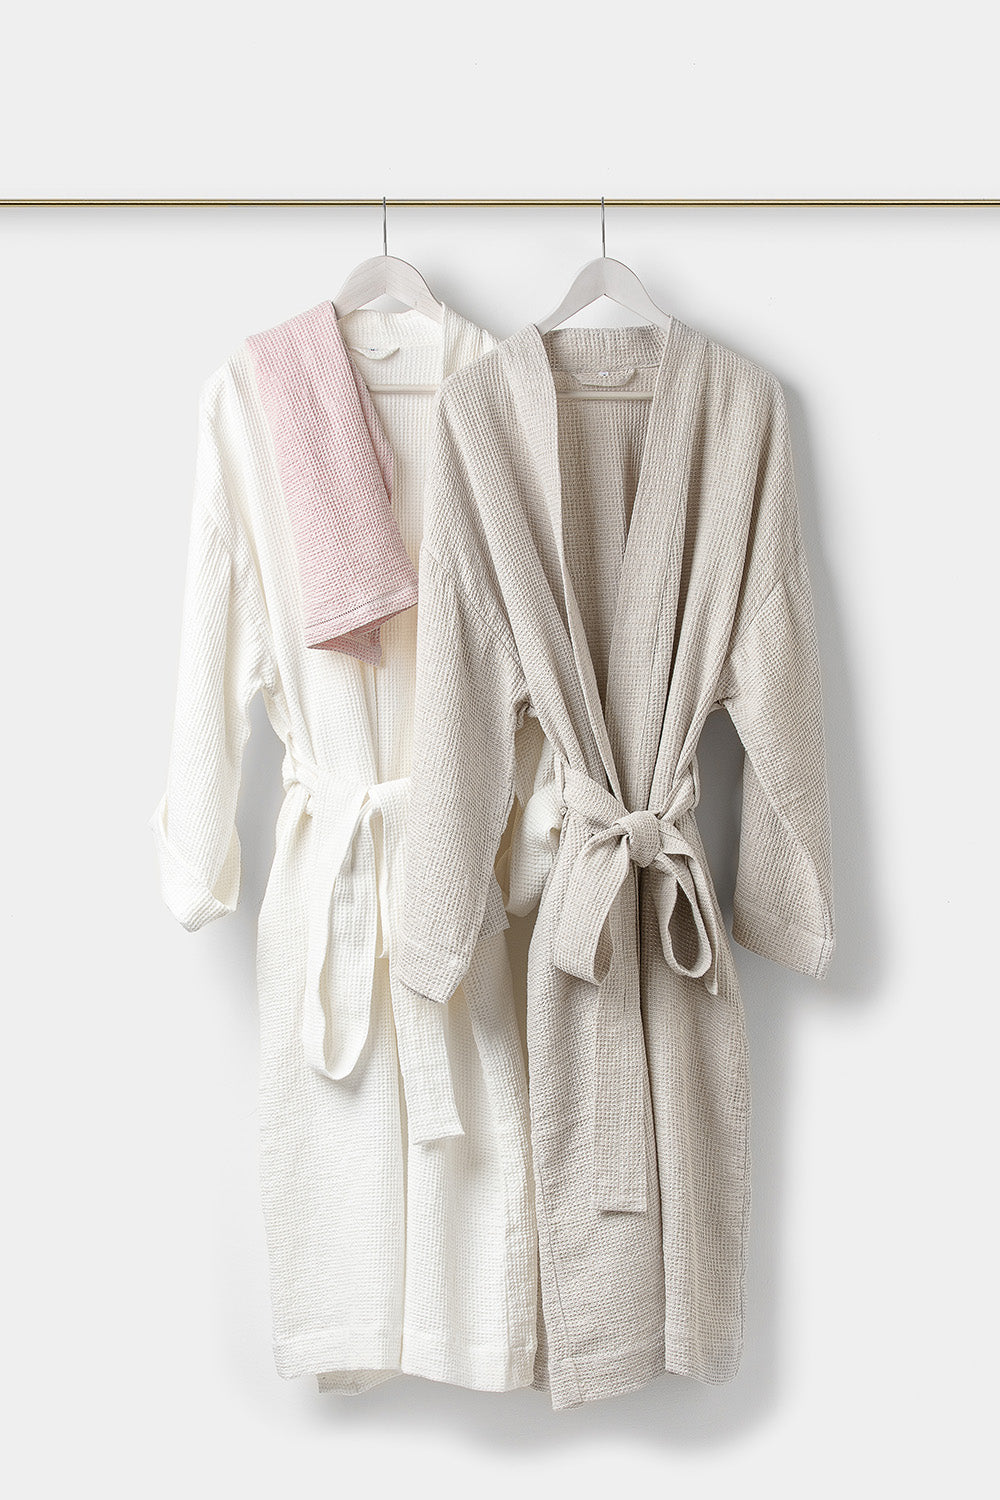 "Montecatini" bathrobe in White